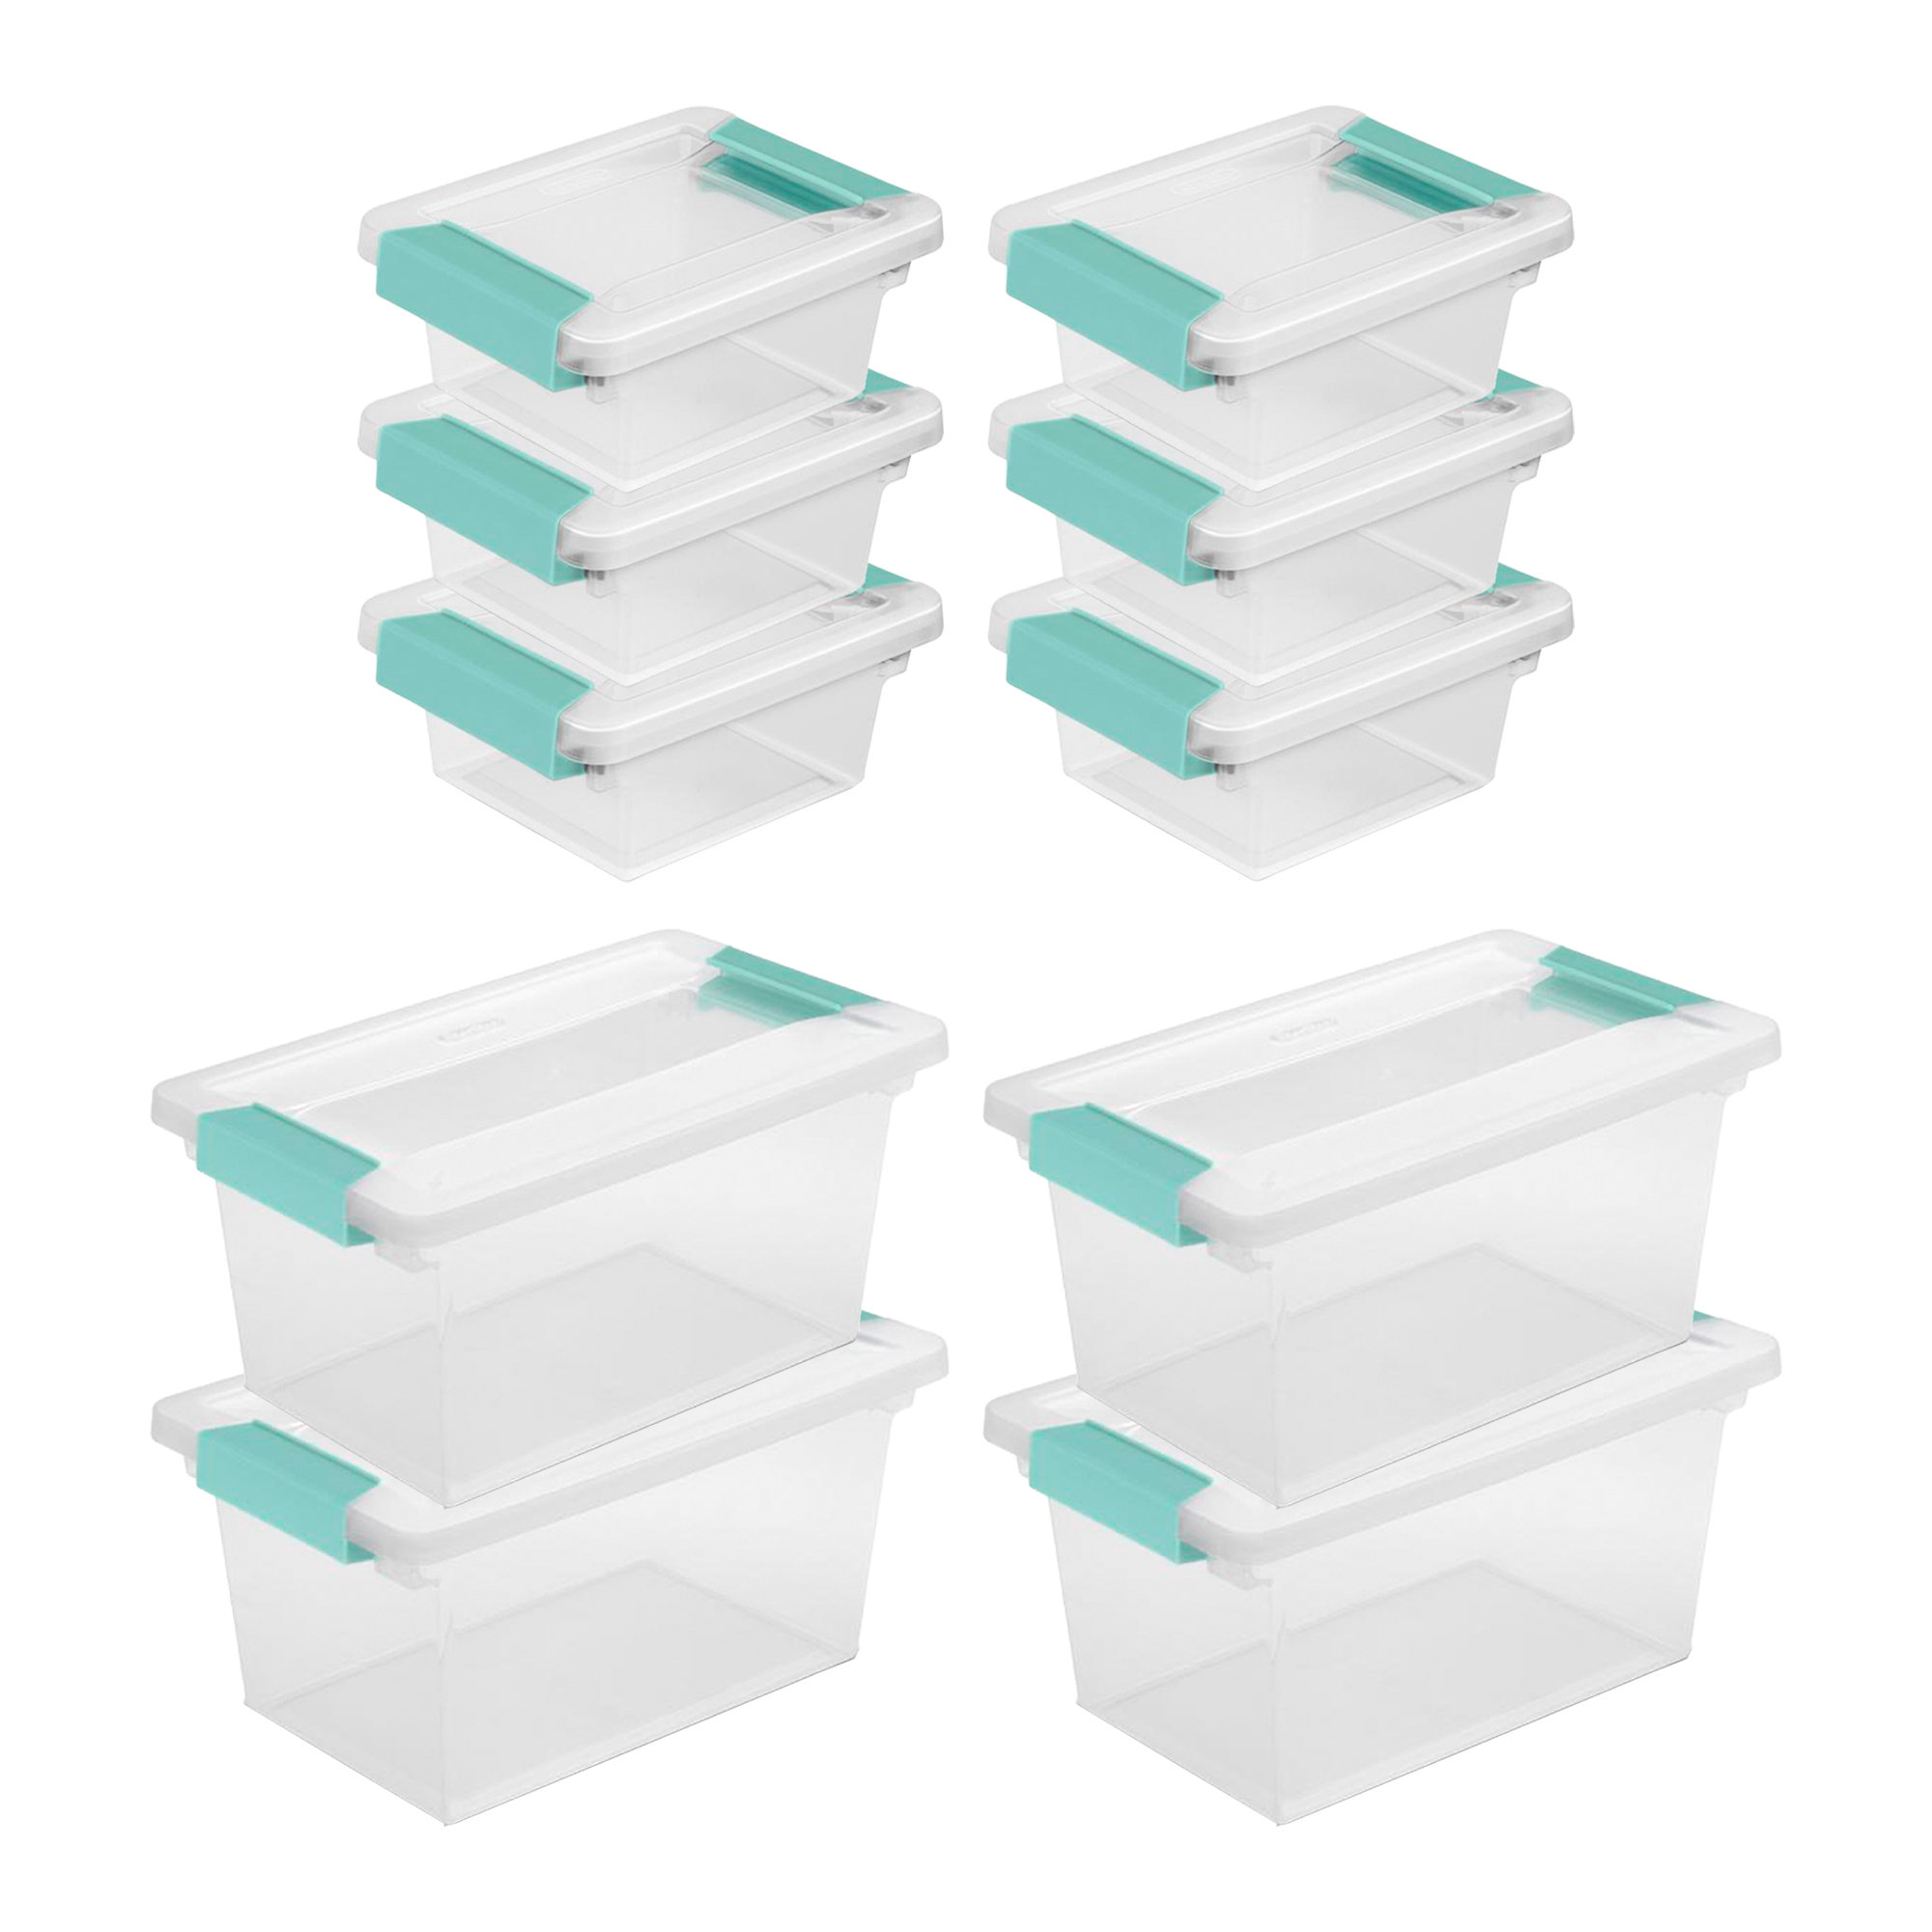  Sterilite Deep Clip Box, Stackable Small Storage Bin